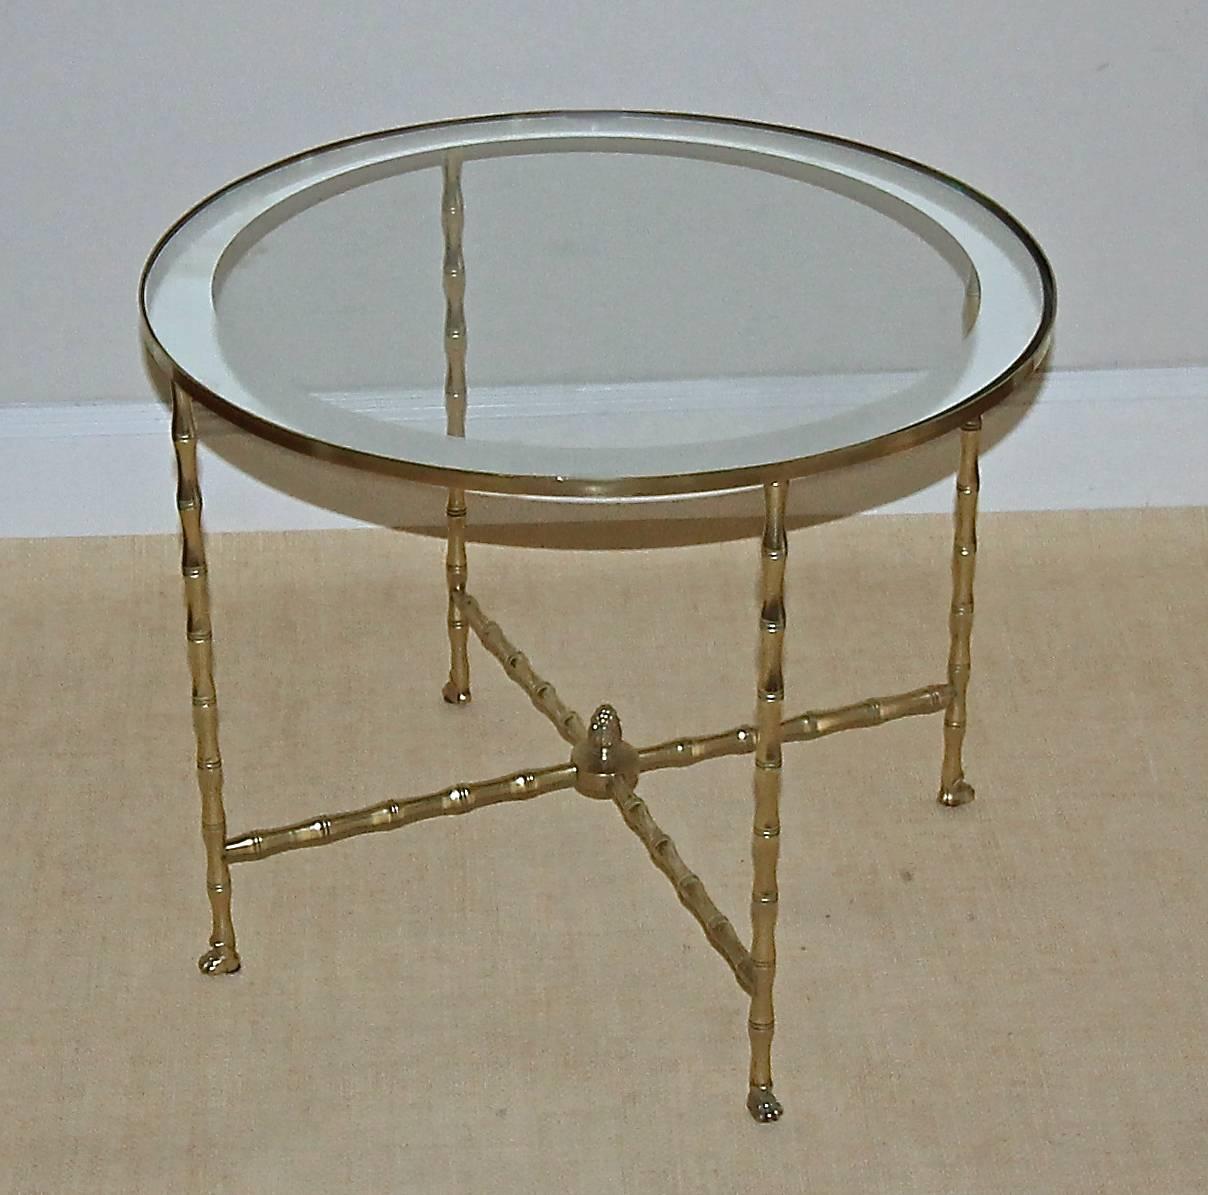 Table d'appoint ronde (ou table basse pour une pièce plus petite) en bronze ou laiton faux bambou des années 1940, avec plateau en verre inséré dans le bord en miroir, par la Maison Bagues. Détails exceptionnels, y compris les pieds en forme de